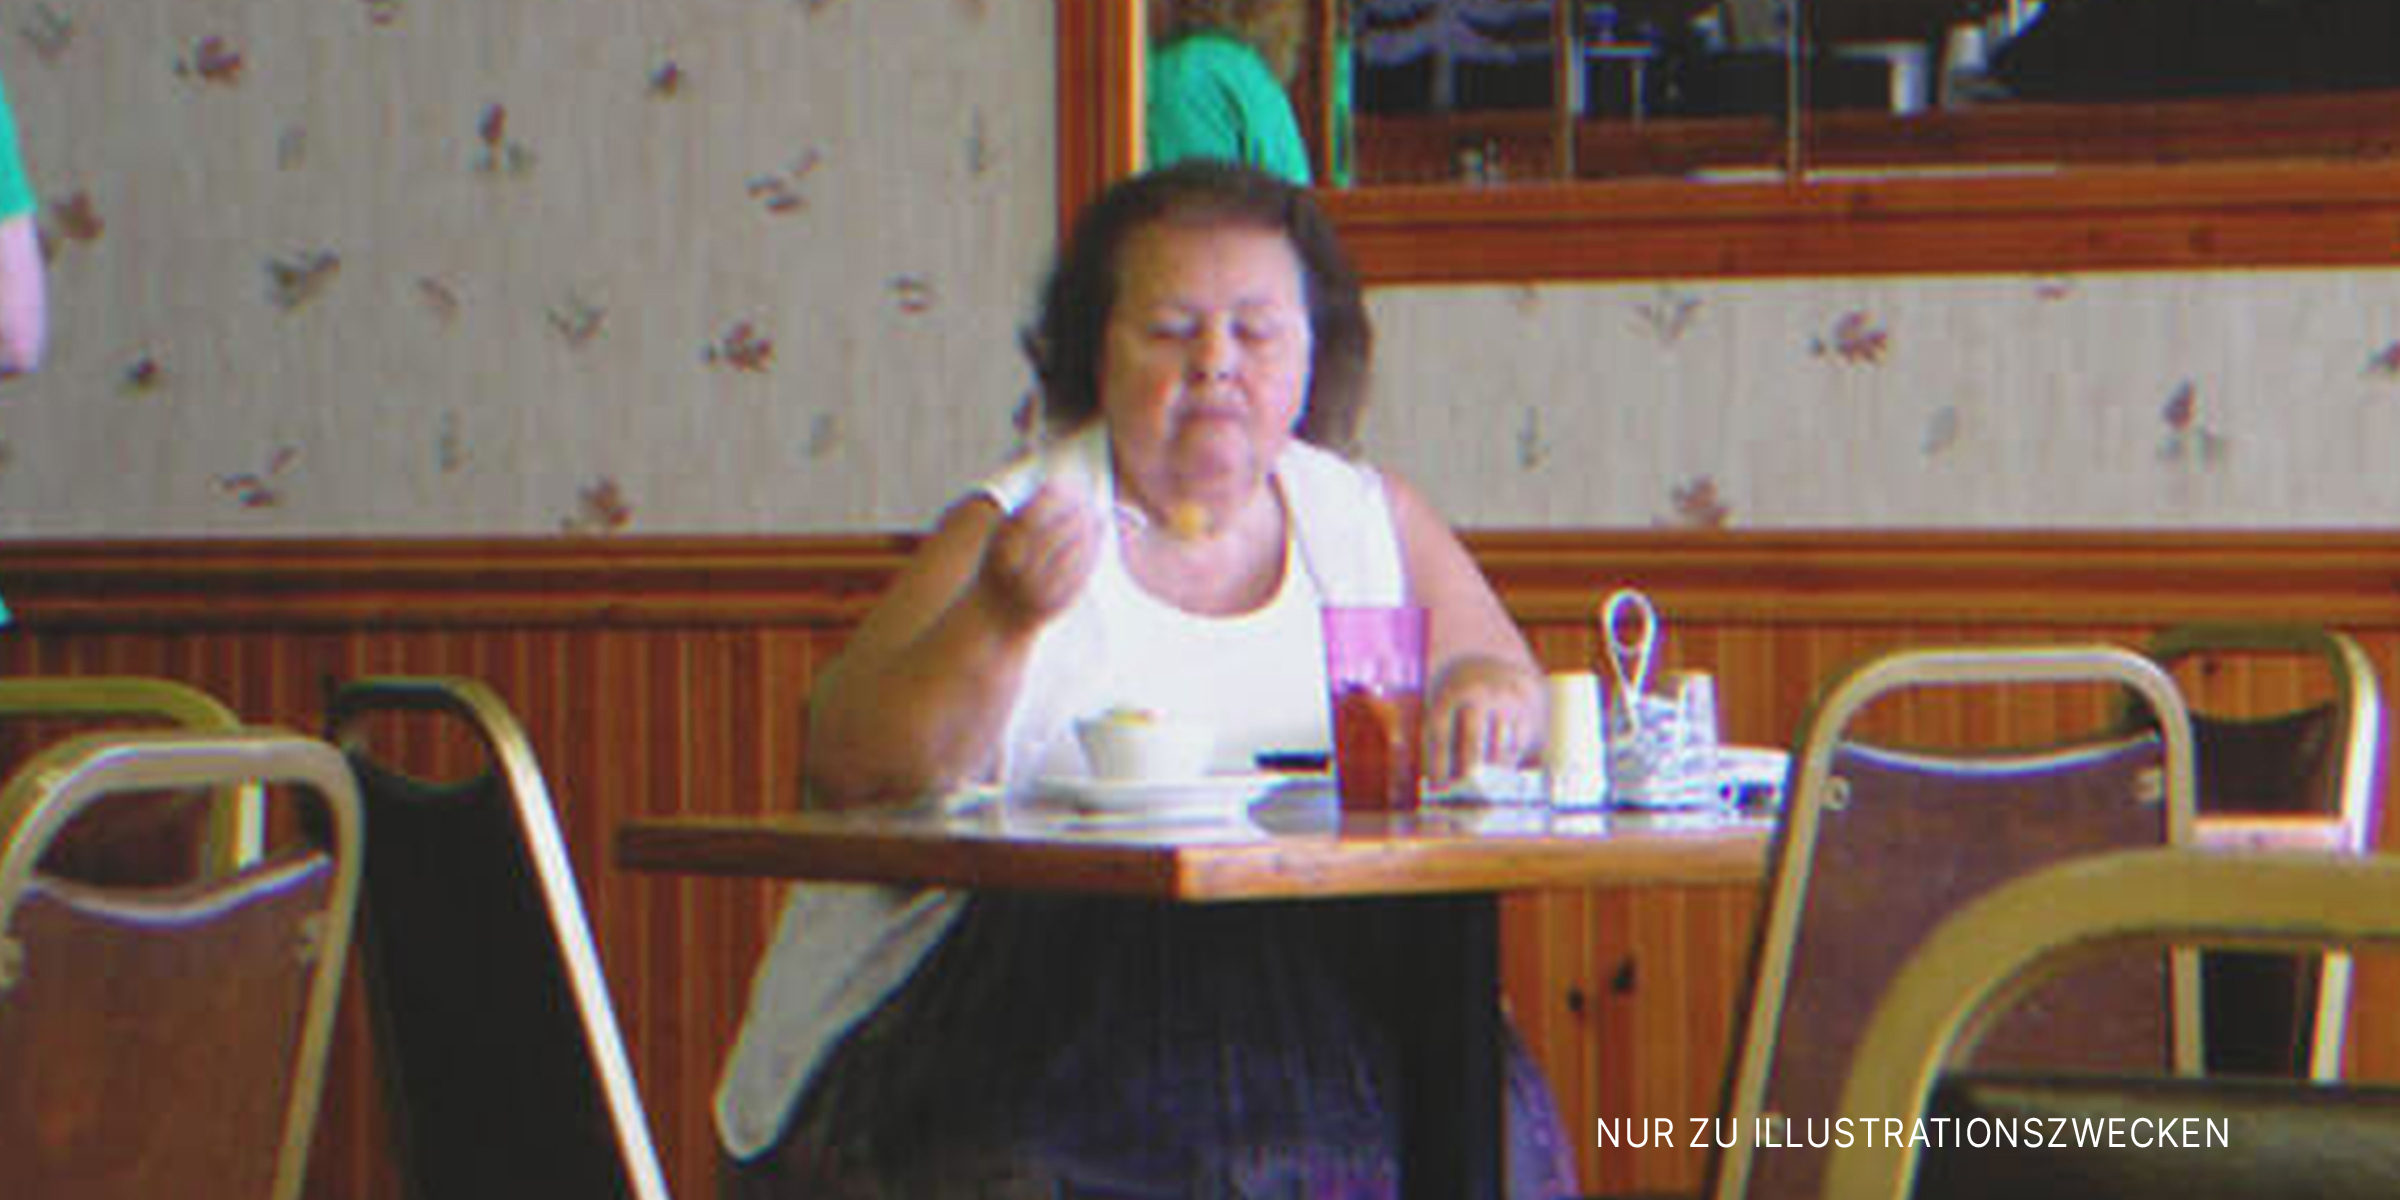 Frau isst im Restaurant | Quelle: Flickr/joguldi (CC BY 2.0)